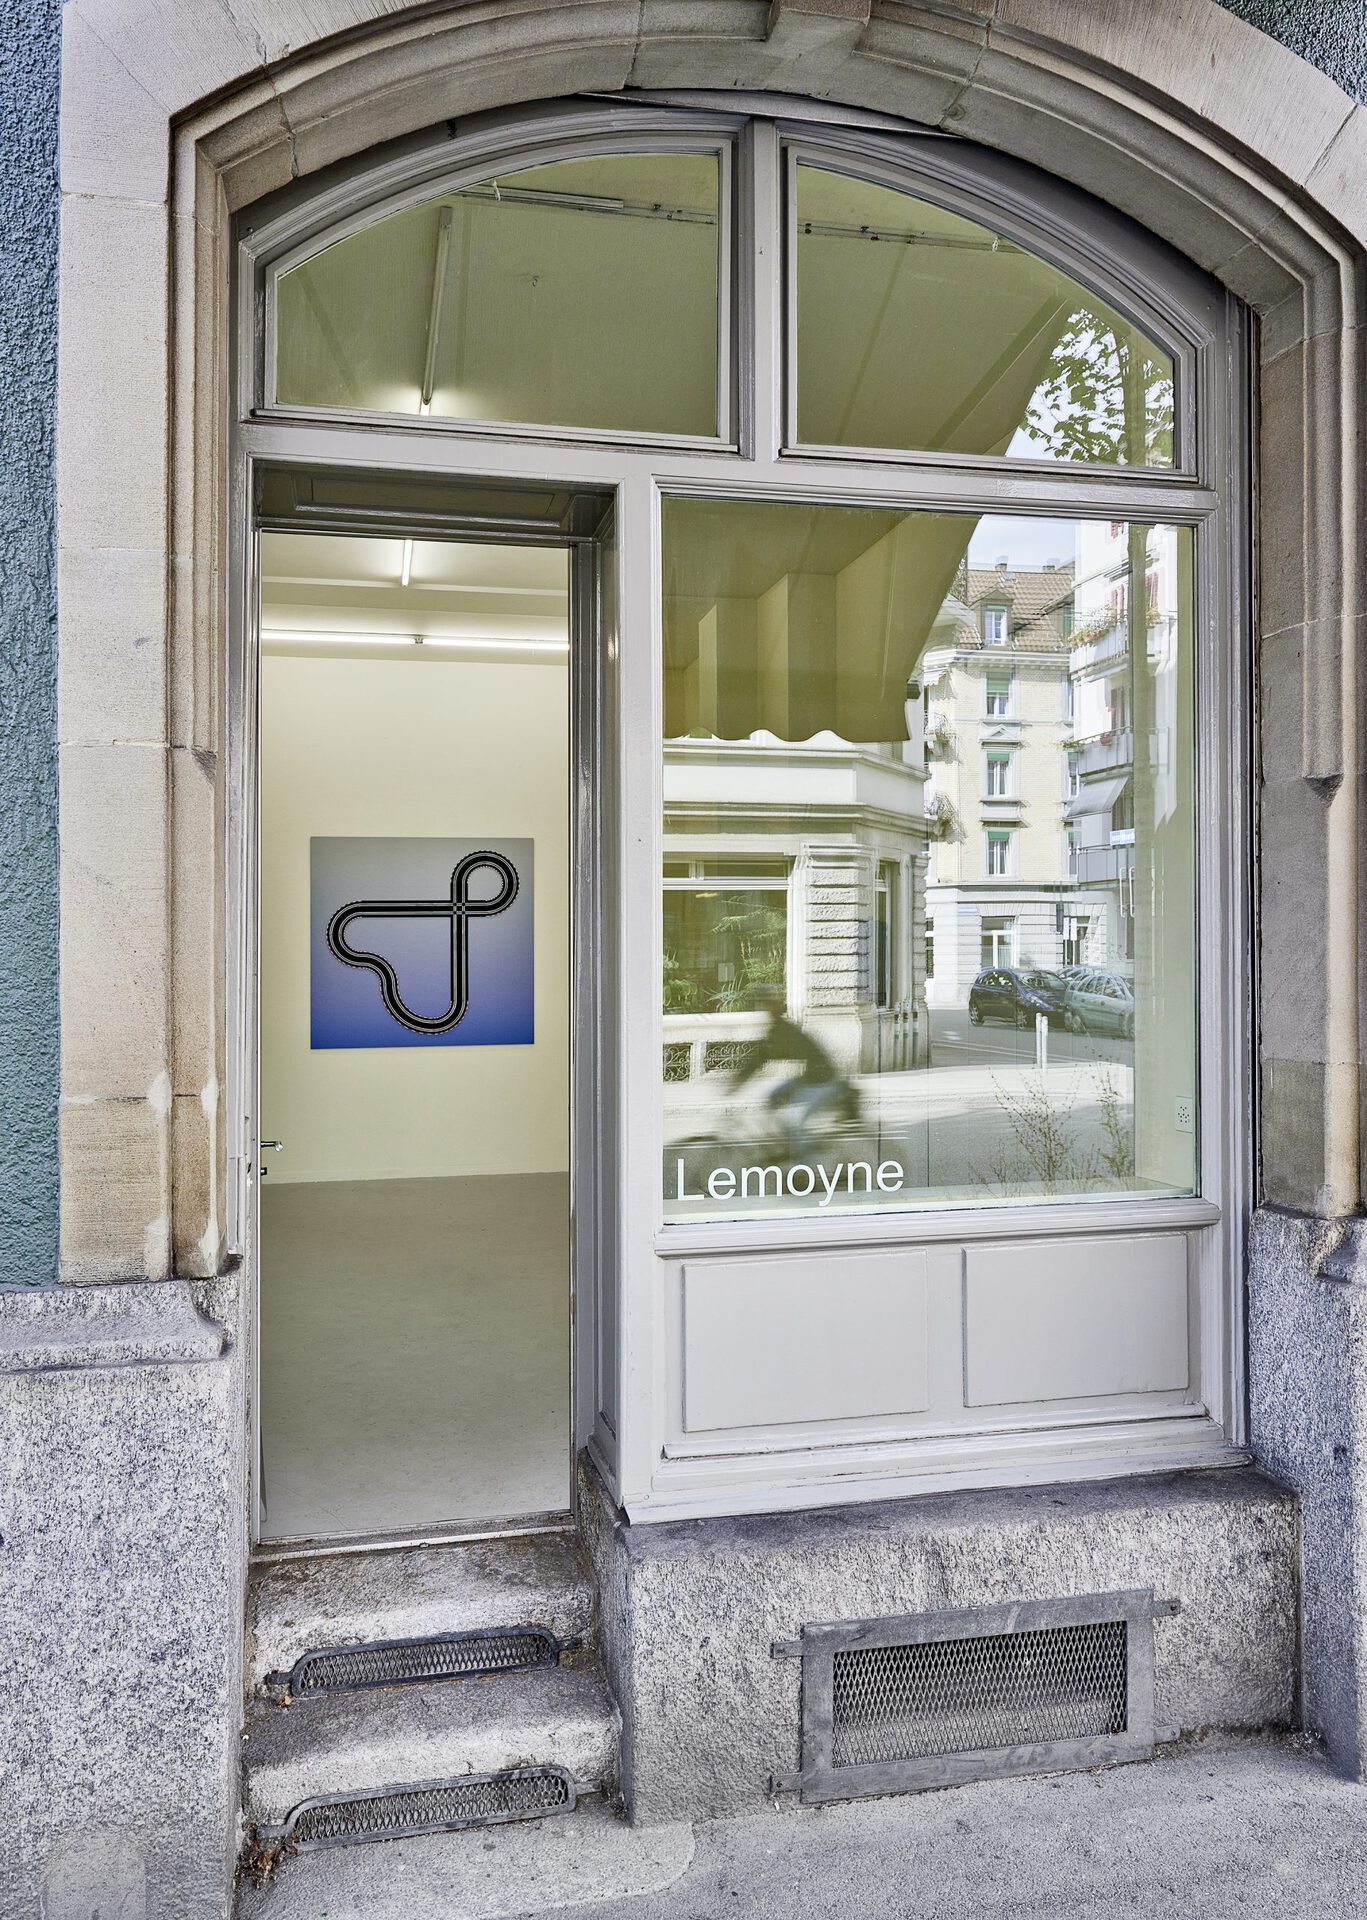 Malte Bartsch, 'Bottom Up', 2020, Installation View from Outside at Lemoyne, Zurich